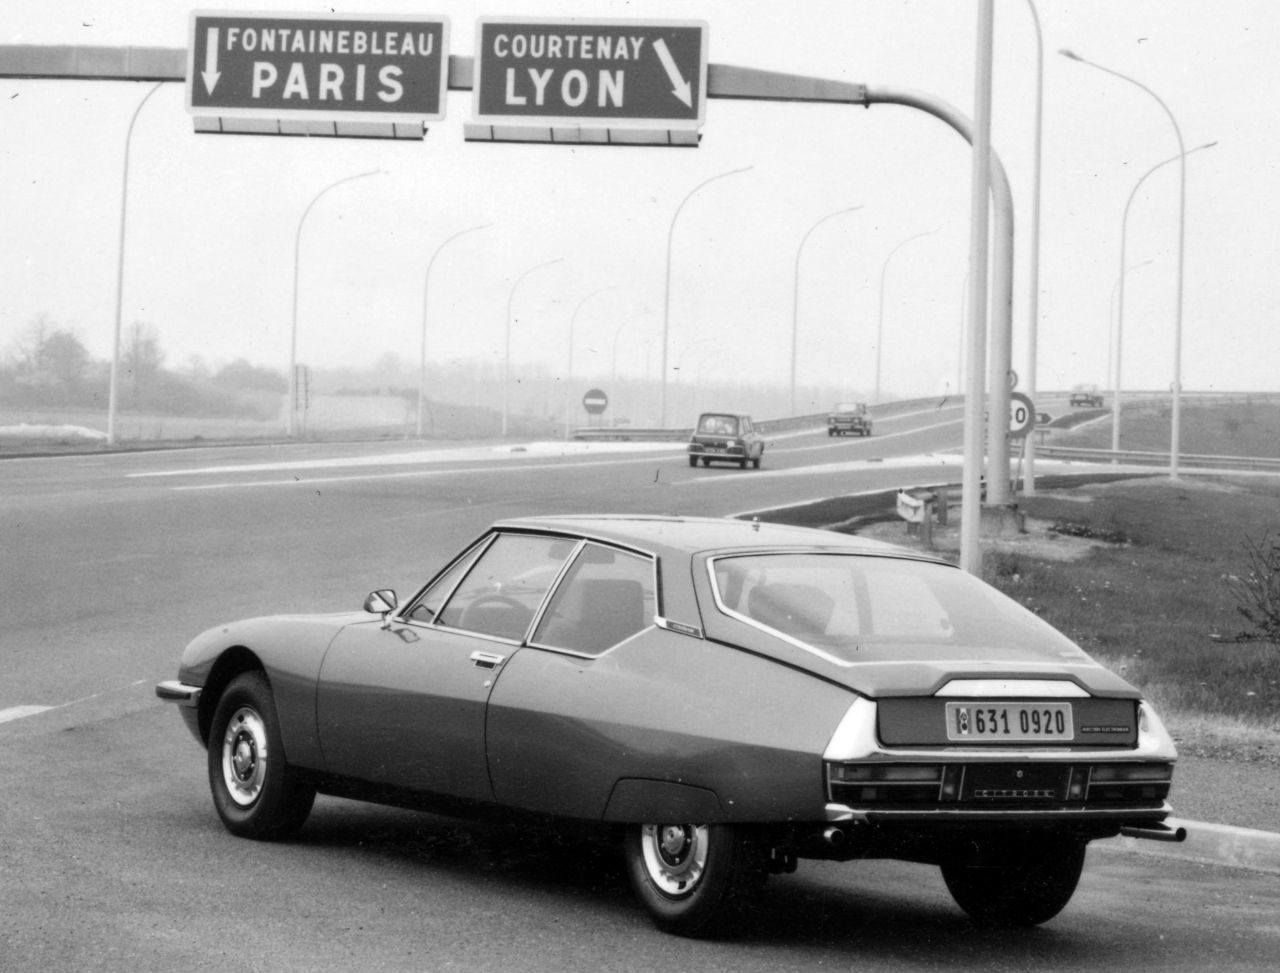 Citroën erkannte, dass die Tropfenform das Tempo steigert und den Verbrauch reduziert. Heute nutzen Eco-Modelle wie Prius und Ioniq diese Aerodynamik.